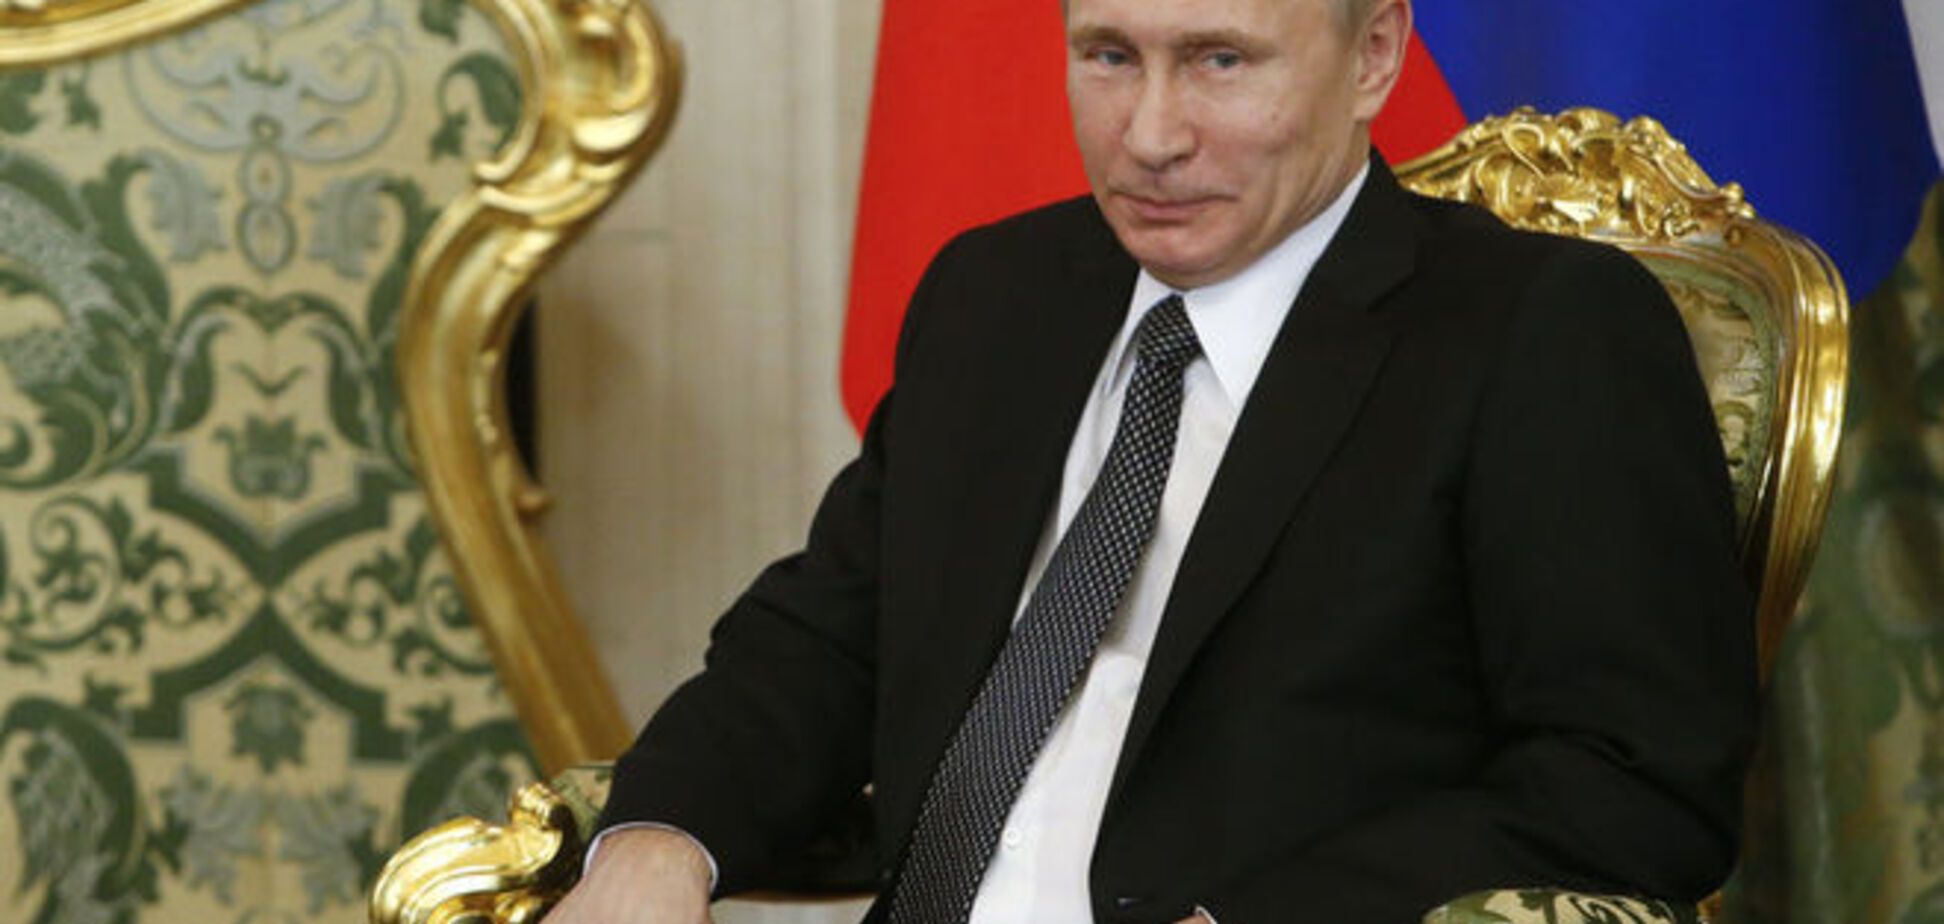 Социологи объявили Путина победителем гипотетических выборов президента России